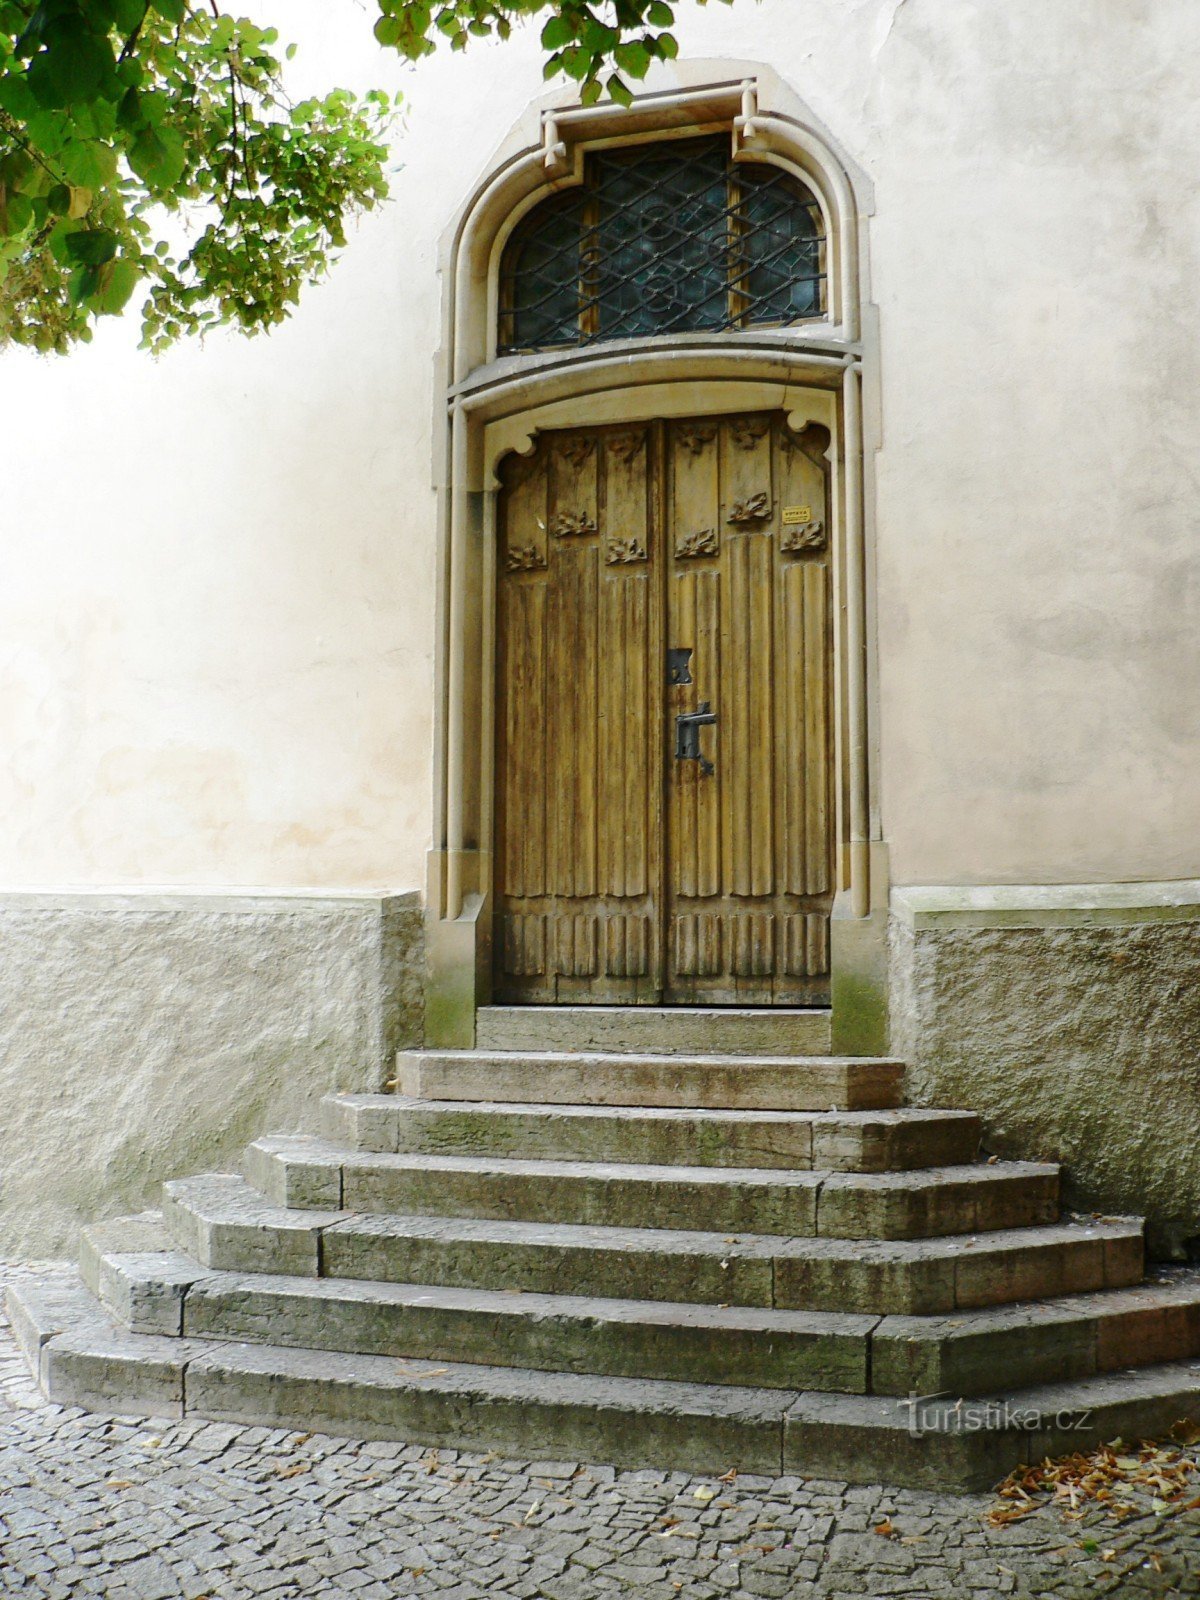 είσοδος στο σκευοφυλάκιο της εκκλησίας, που άνοιξε πρόσφατα μετά το 1901, σύμφωνα με